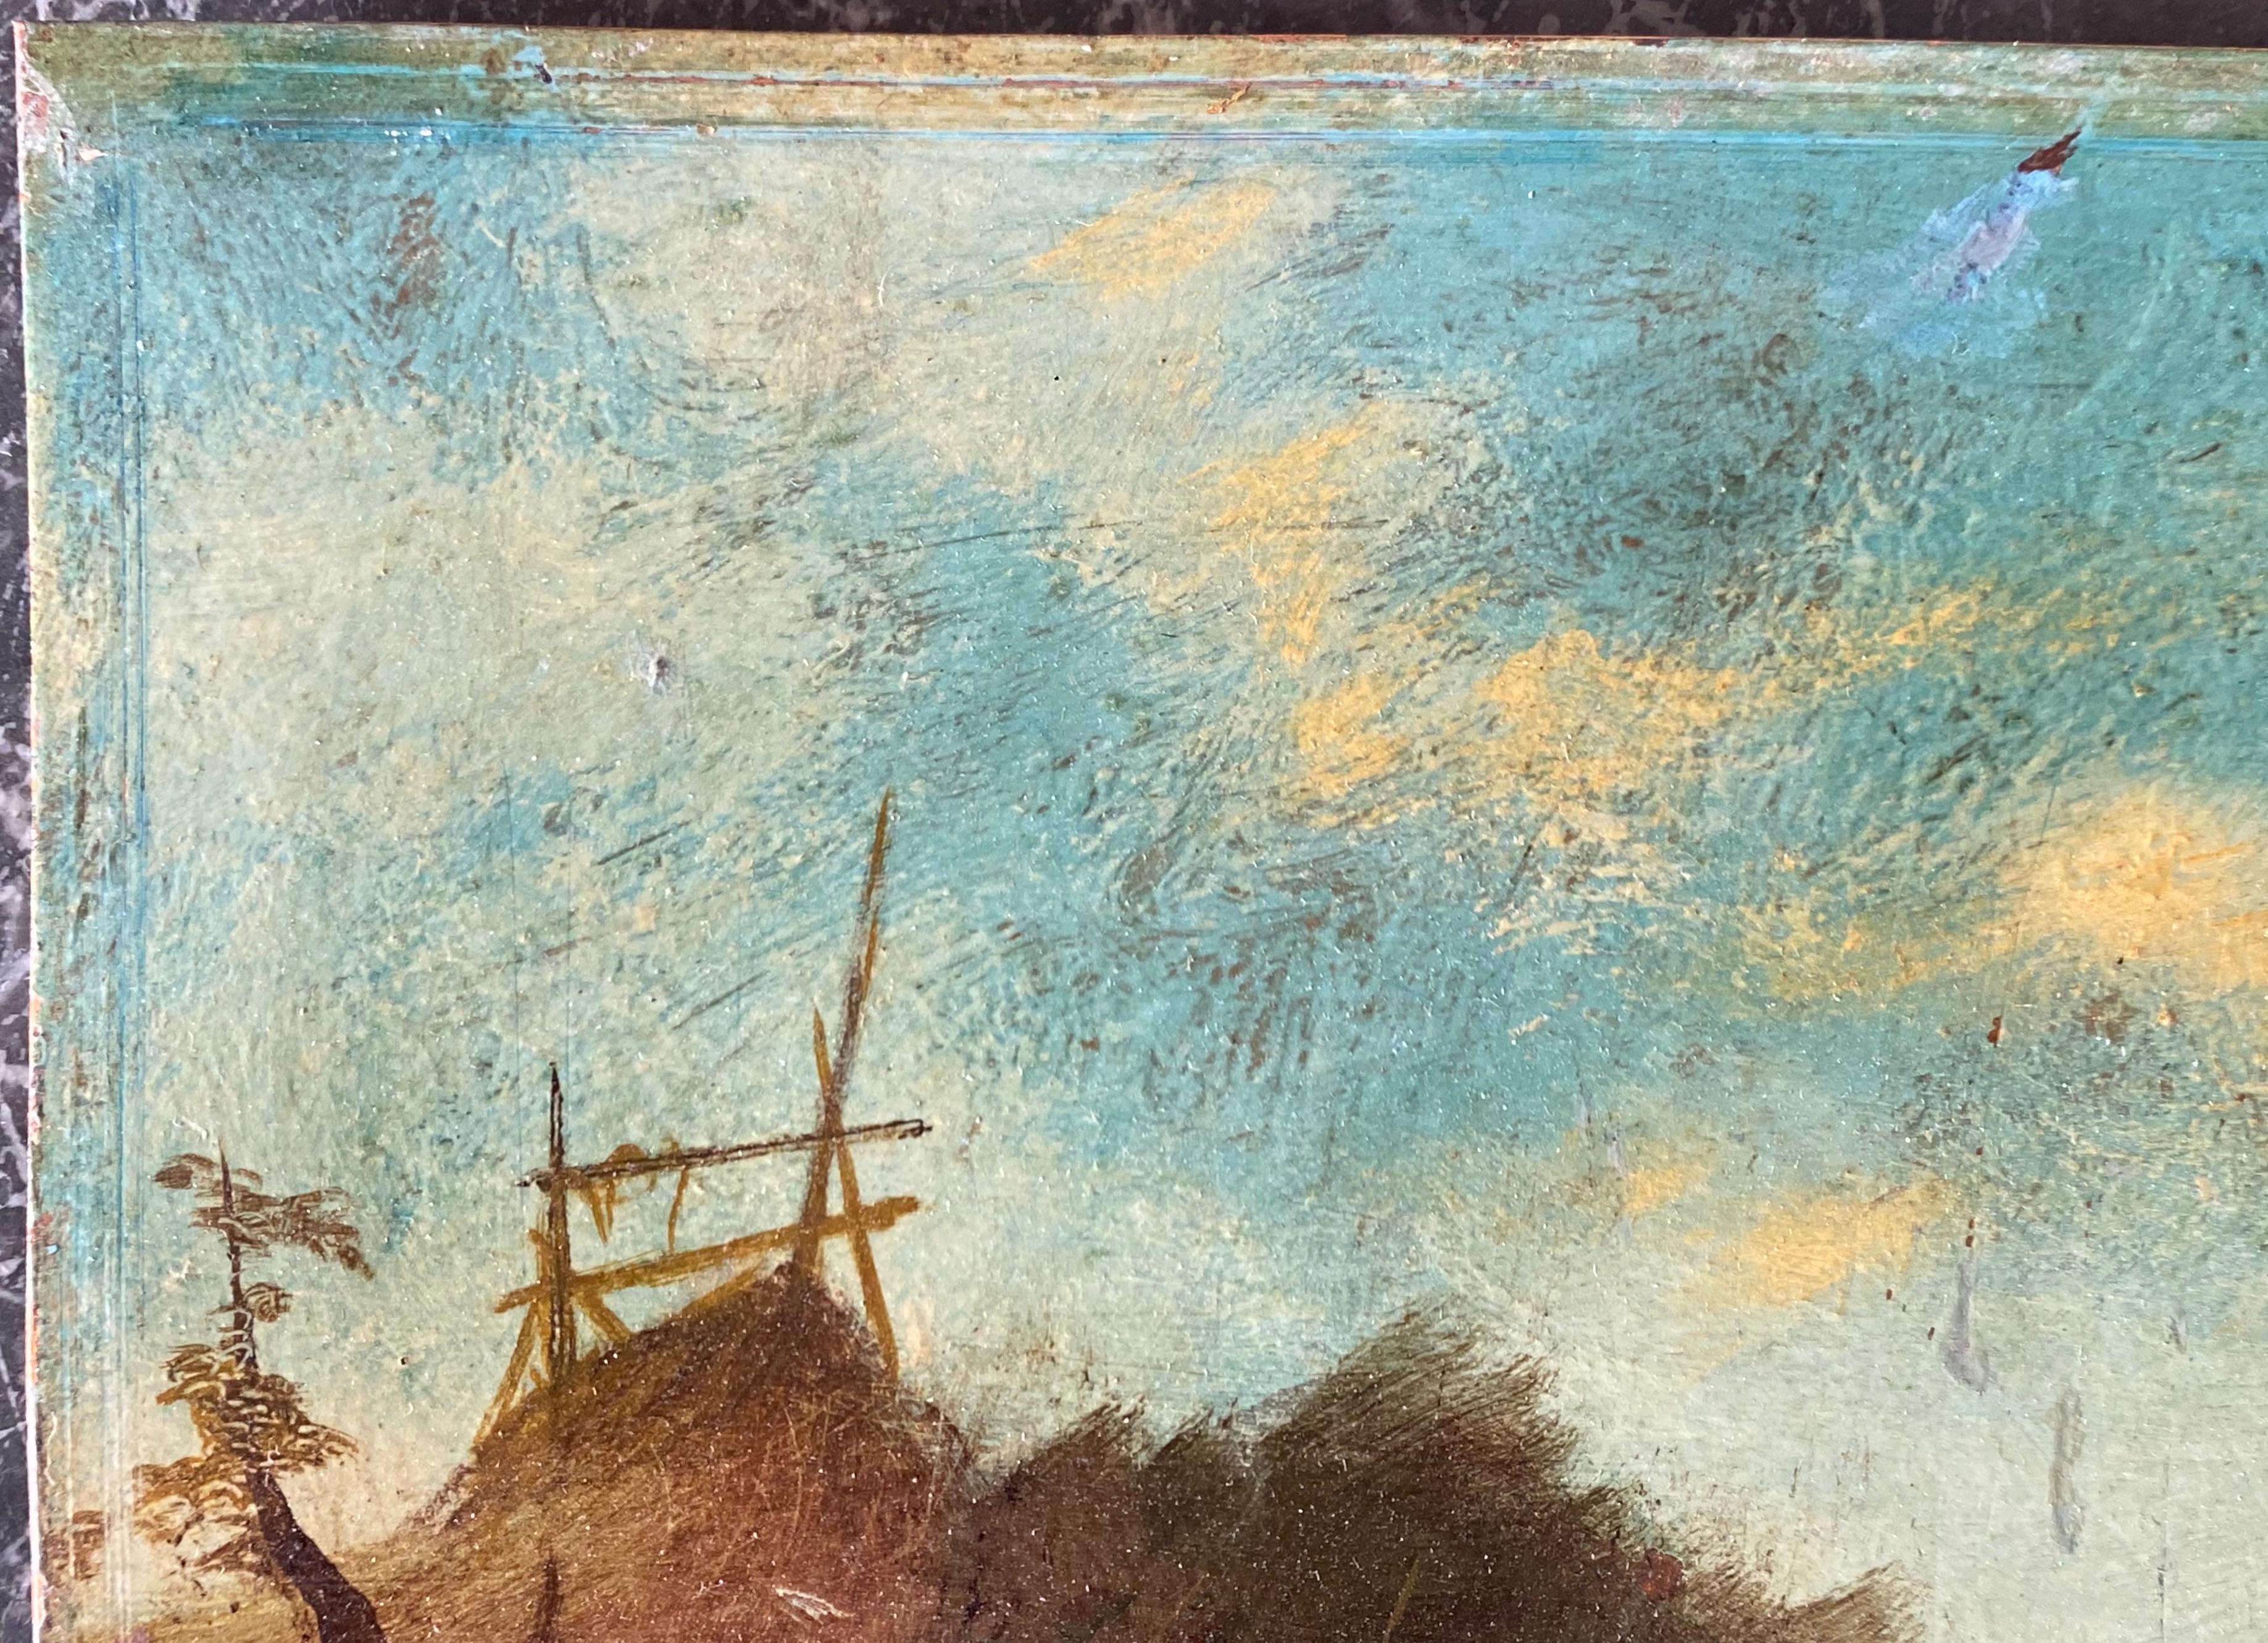 Peinture à l'huile sur panneau de cuivre de l'école flamande du 17e siècle

Une belle peinture à l'huile originale sur panneau de cuivre

Un paysage avec des personnages dans divers jeux et sports

Les notes au dos indiquent que le tableau est de